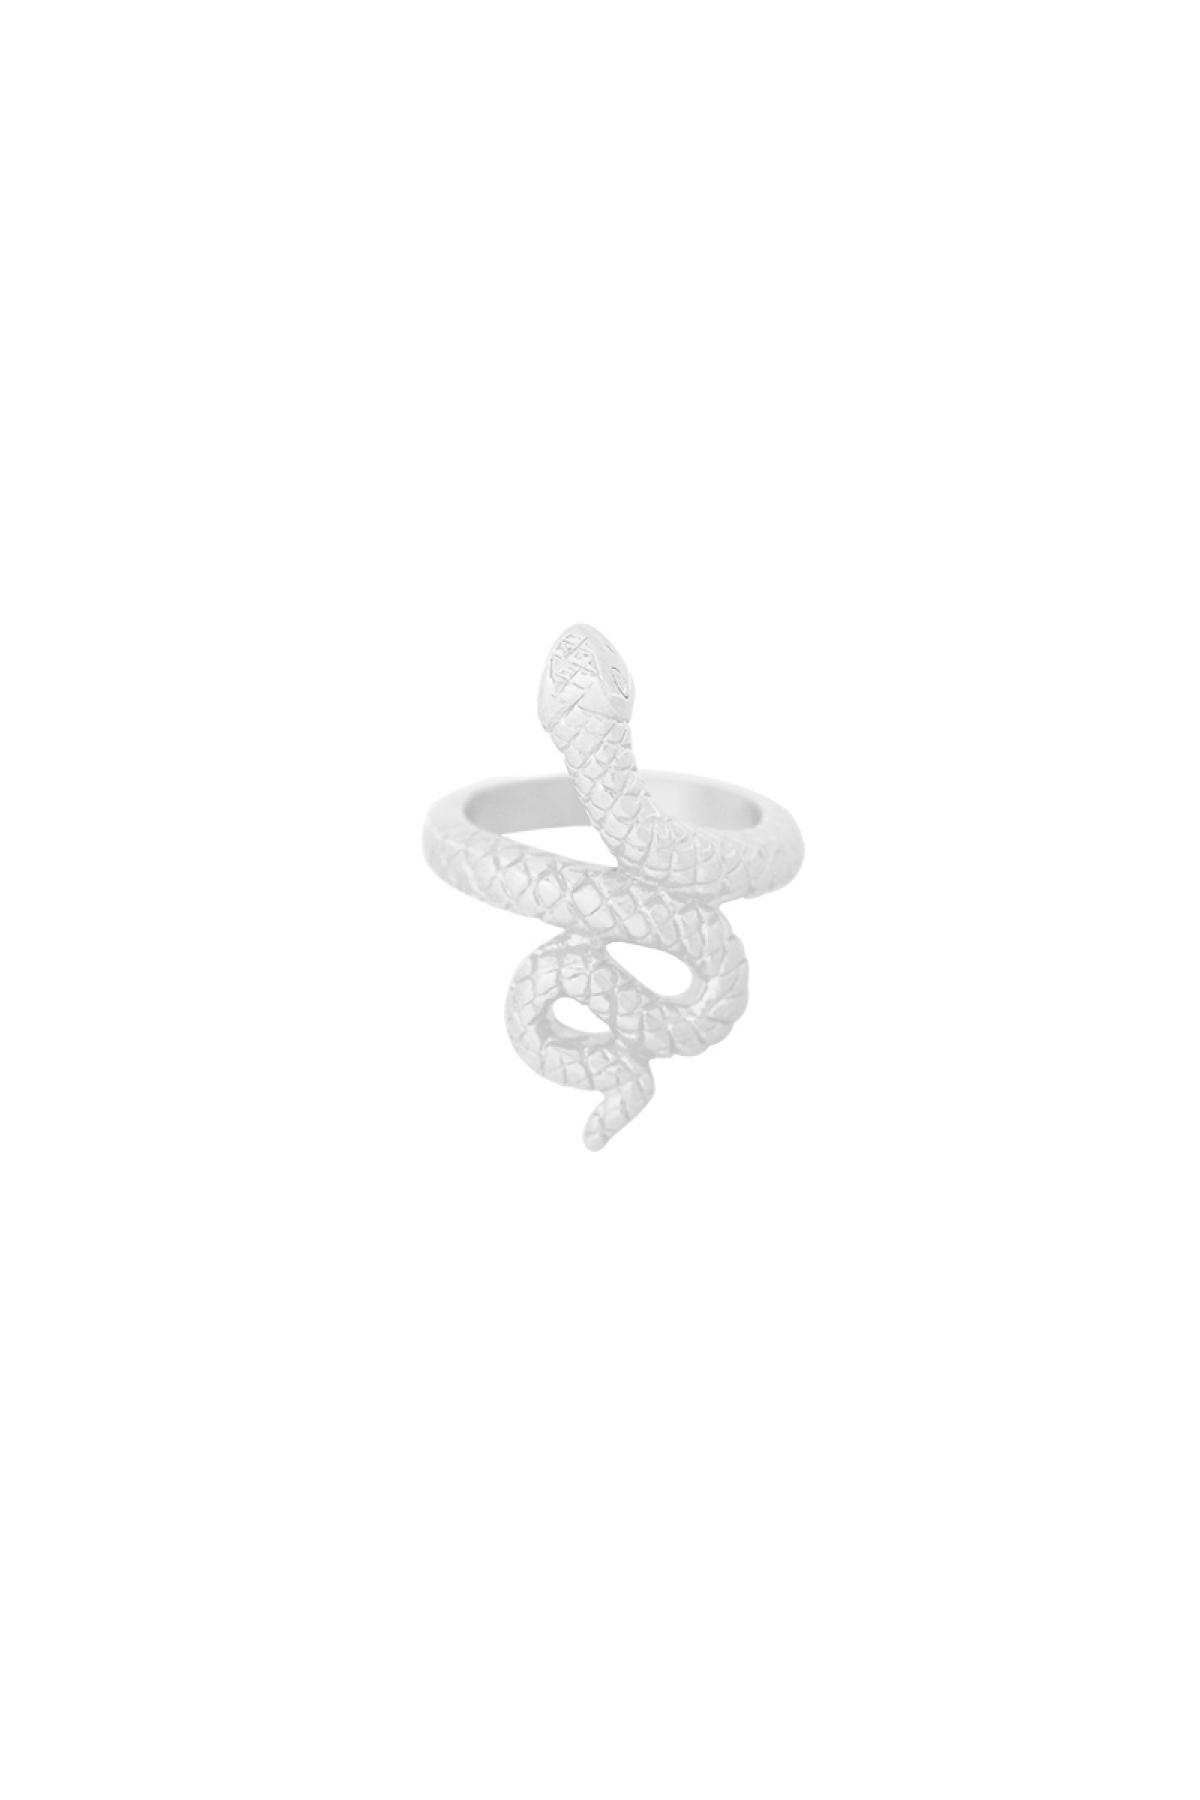 Schlangenförmiger Ring aus Edelstahl – Silber – #16 h5 